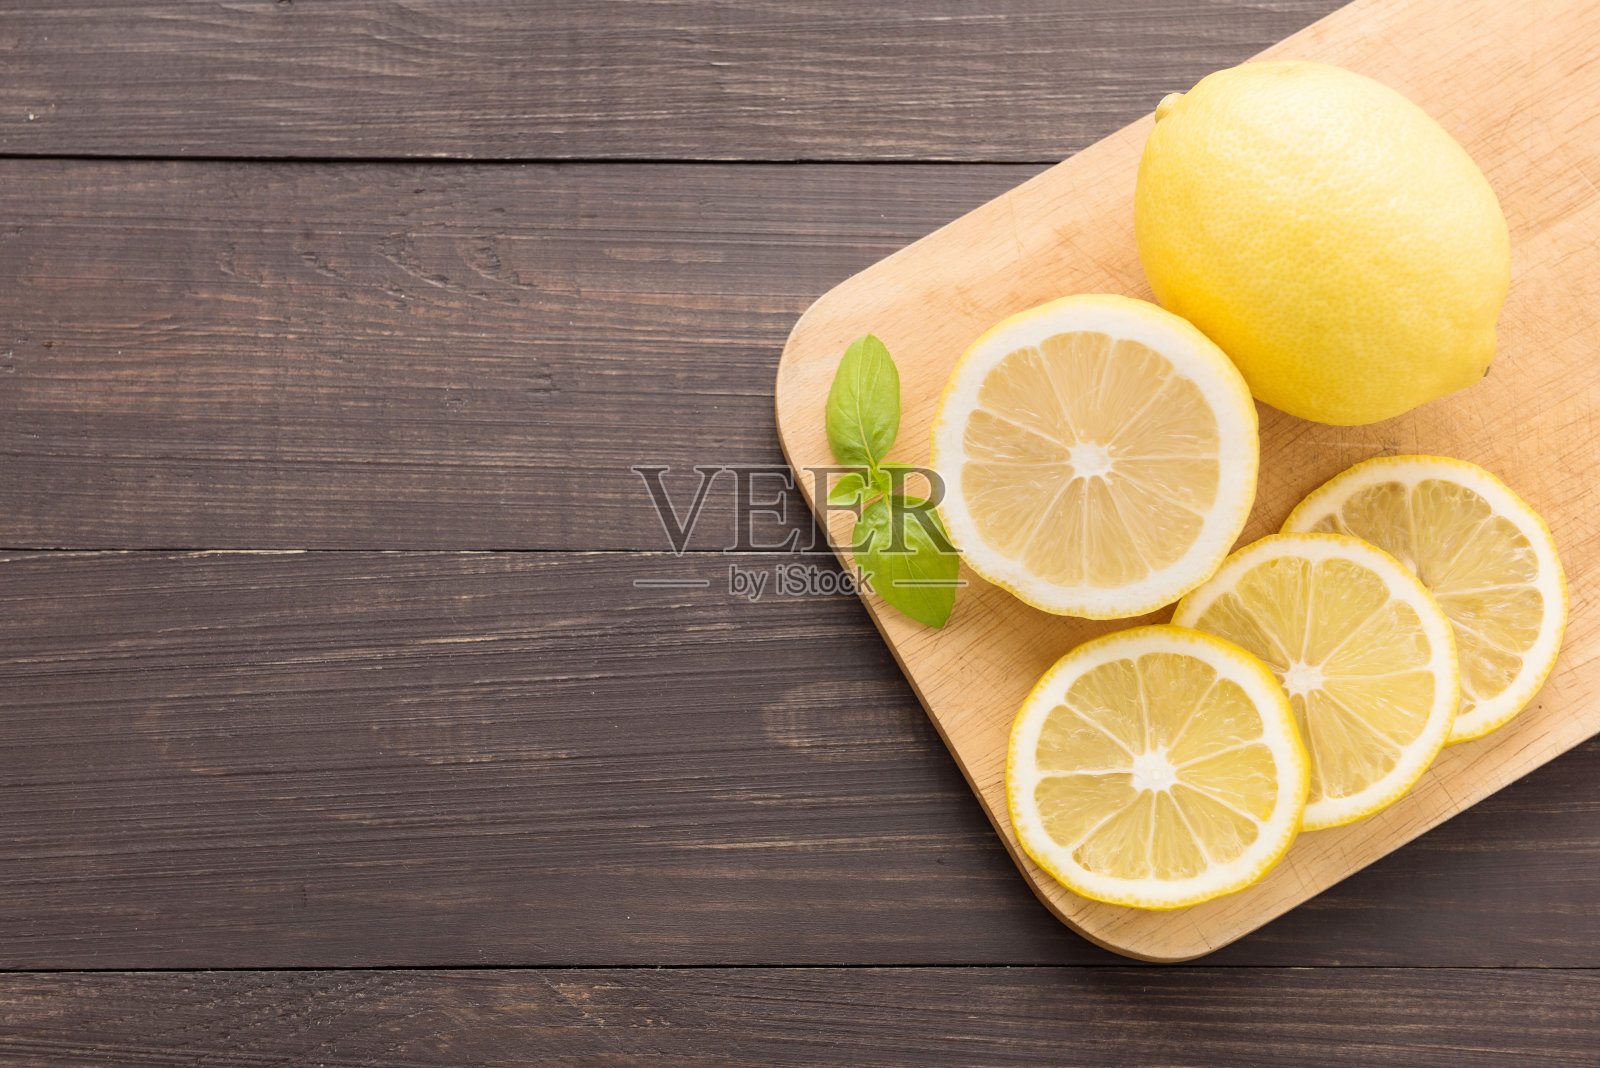 木质背景上点缀着新鲜的柠檬片照片摄影图片